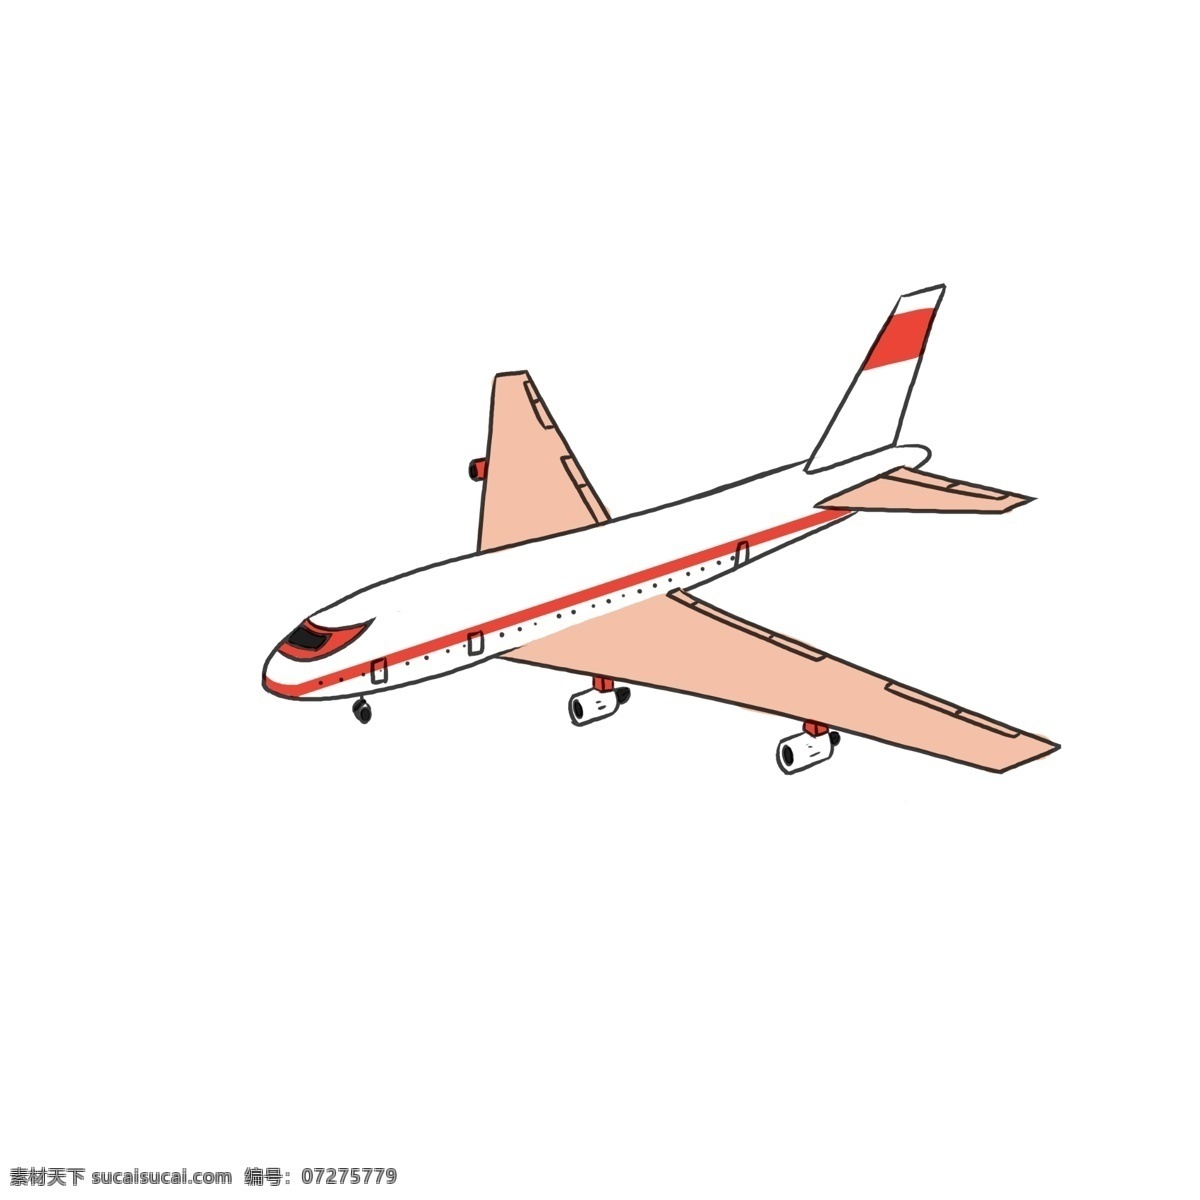 白色 飞机 手绘 插画 白色的飞机 漂亮的飞机 航天飞机 航空飞机 交通工具飞机 飞机装饰 飞机插画